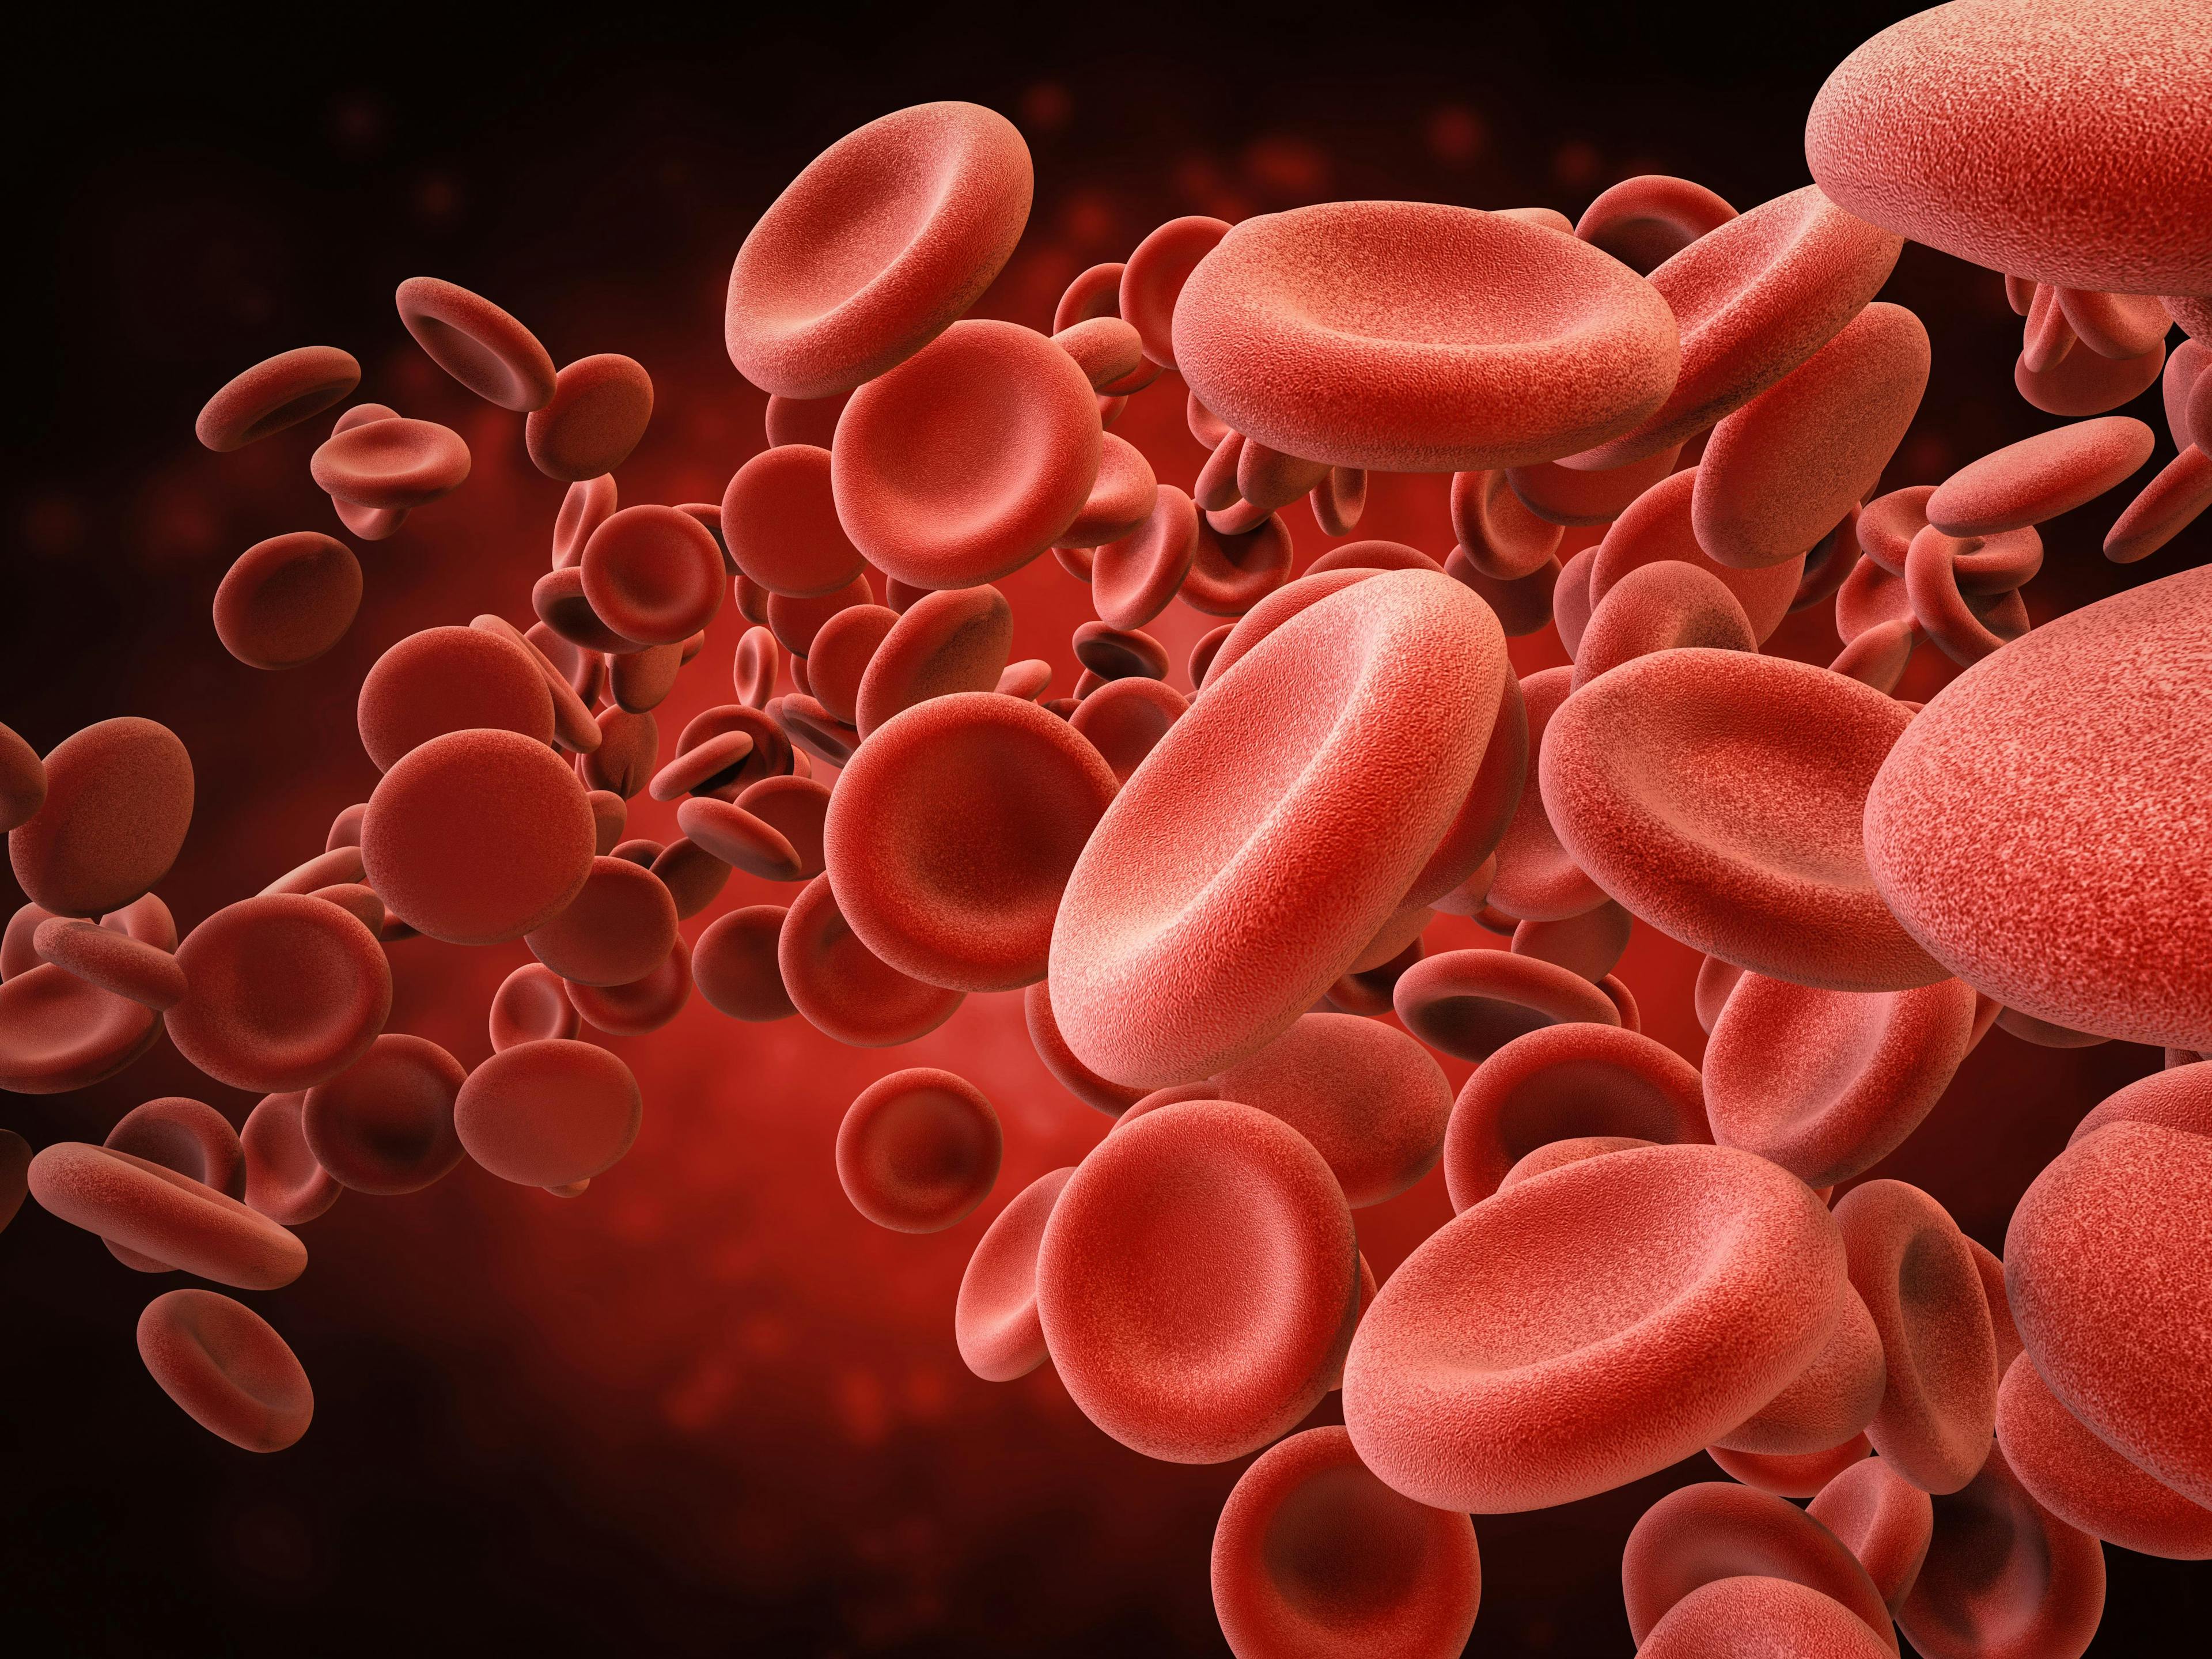 Digital illustration of red blood cells.